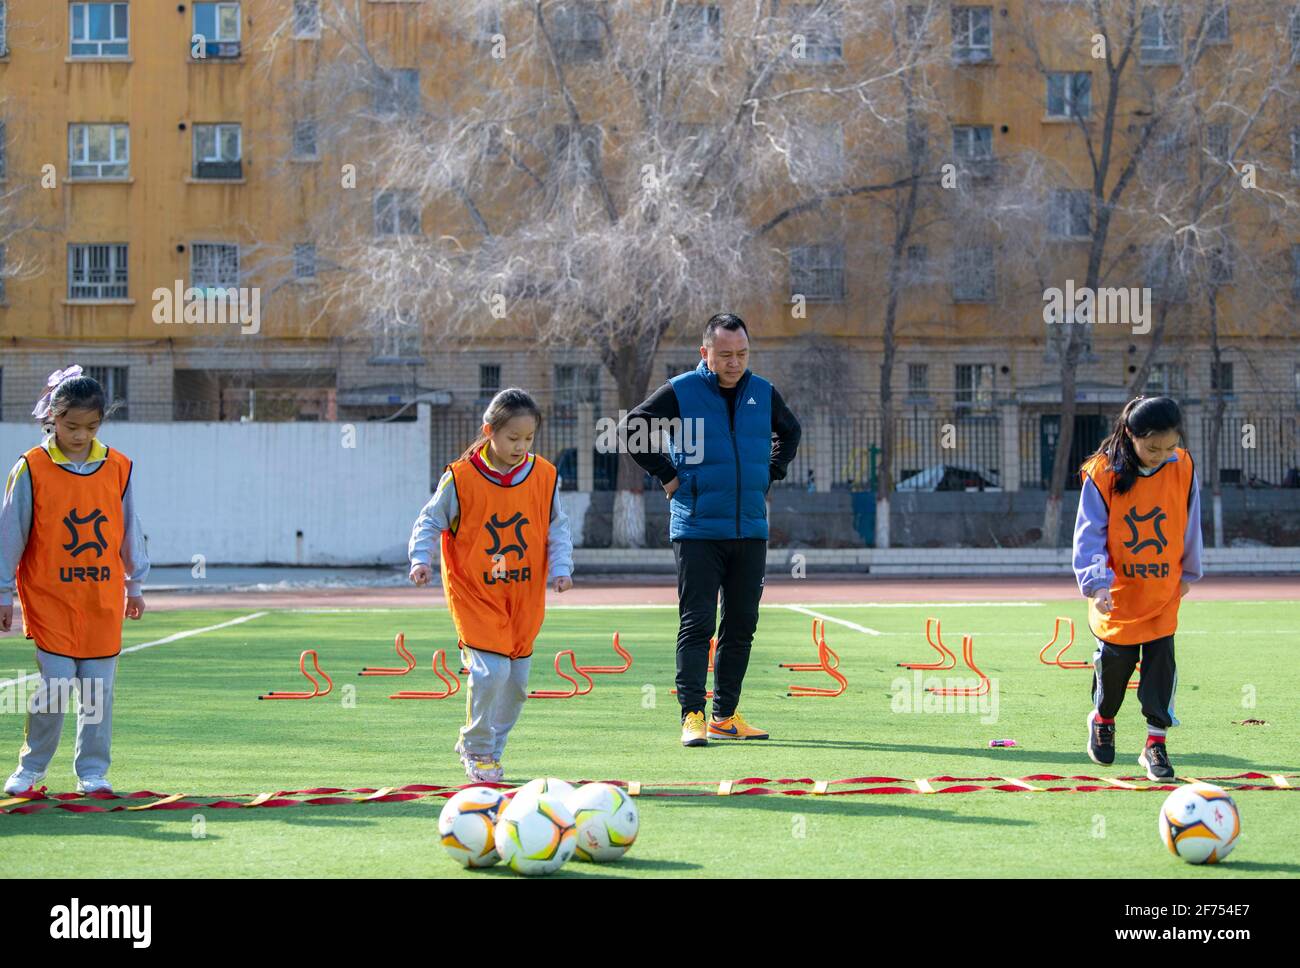 (210405) -- SHAWAN, 5. April 2021 (Xinhua) -- Xia Songhao (2. R) und seine Schüler nehmen am 1. April 2021 an einer Trainingseinheit in der Stadt Shawan, der Autonomen Region Xinjiang Uygur im Nordwesten Chinas, Teil. 2011 wurde die Mädchen-Fußballmannschaft der Grundschule Nr. 2 in Shawan City gegründet. Unter der Leitung von Xia Songhao, der seit fast zehn Jahren Fußball auf dem Campus trainiert, hat sich die Fußballmannschaft der Mädchen zu einer vielfältigen Gruppe aus multiethnischen Spielern entwickelt. Nach kontinuierlichem und strengem Training hat das Team hervorragende Ergebnisse erzielt und eine Reihe von Meisterschaften auf verschiedenen Ebenen gewonnen. Stockfoto